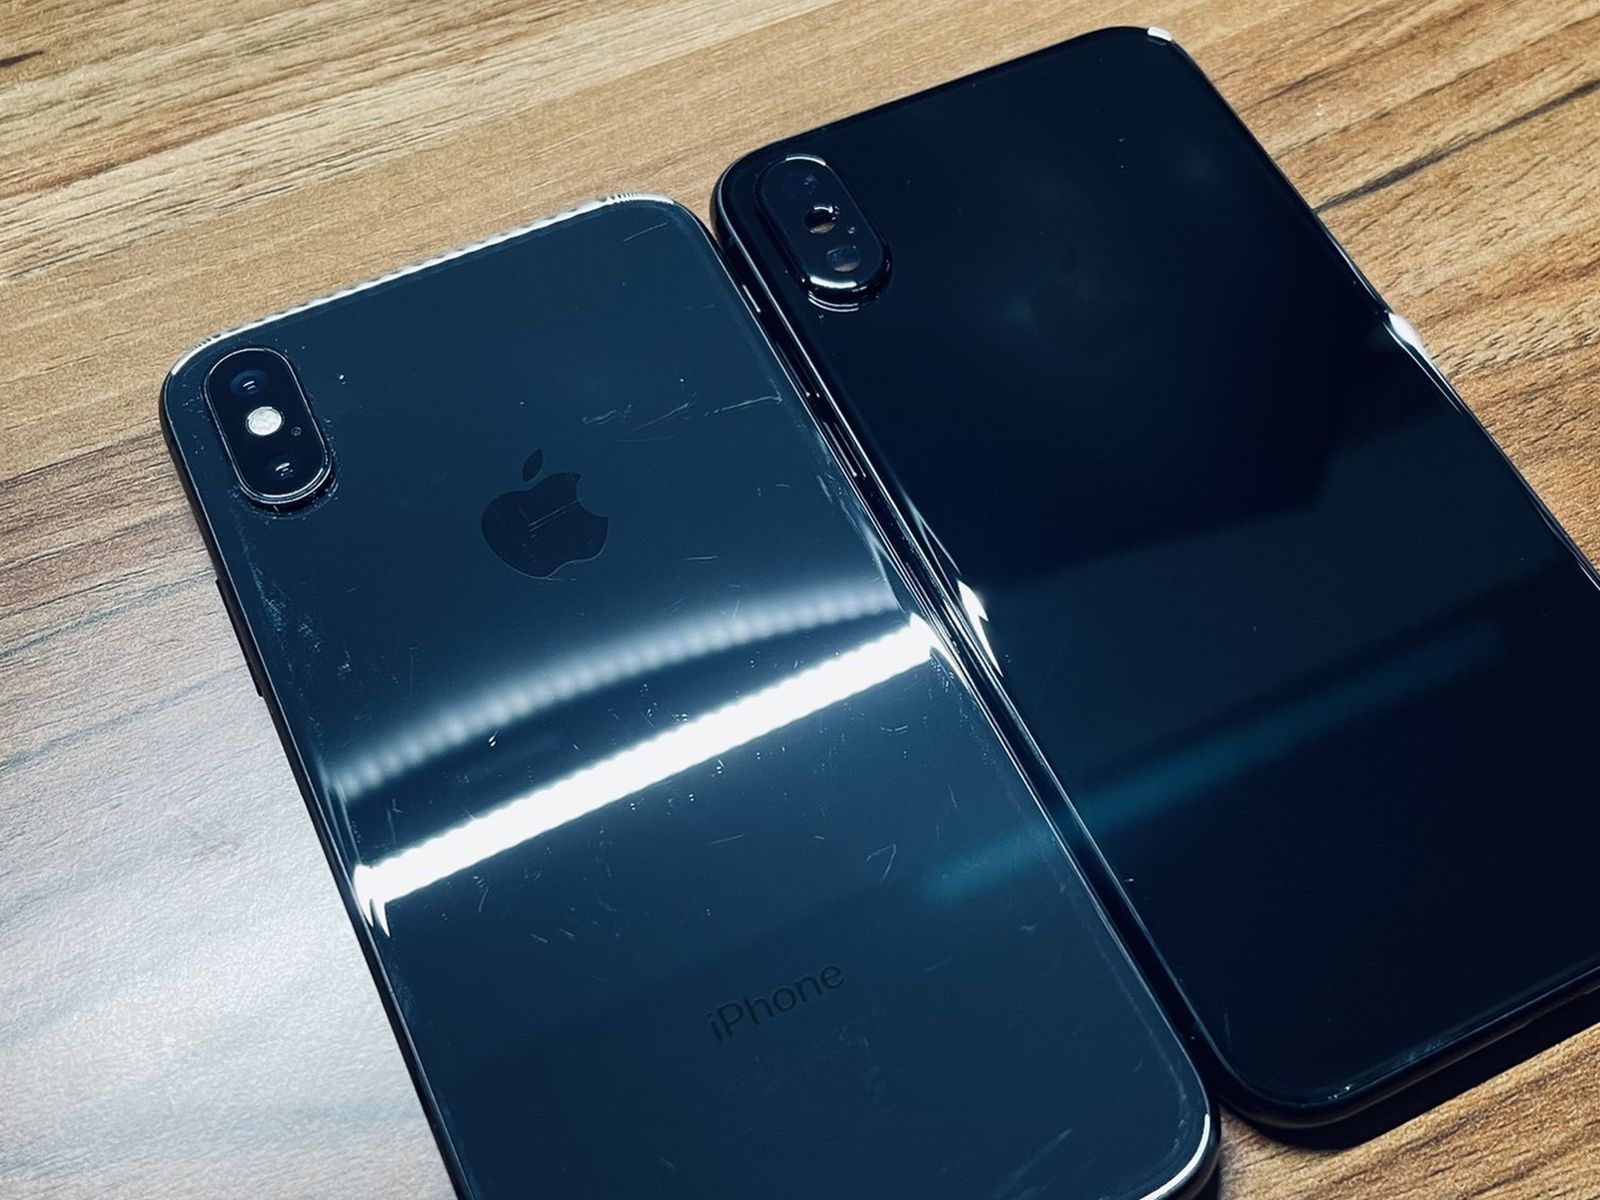 Apple Prototyped a Jet Black iPhone X - MacRumors